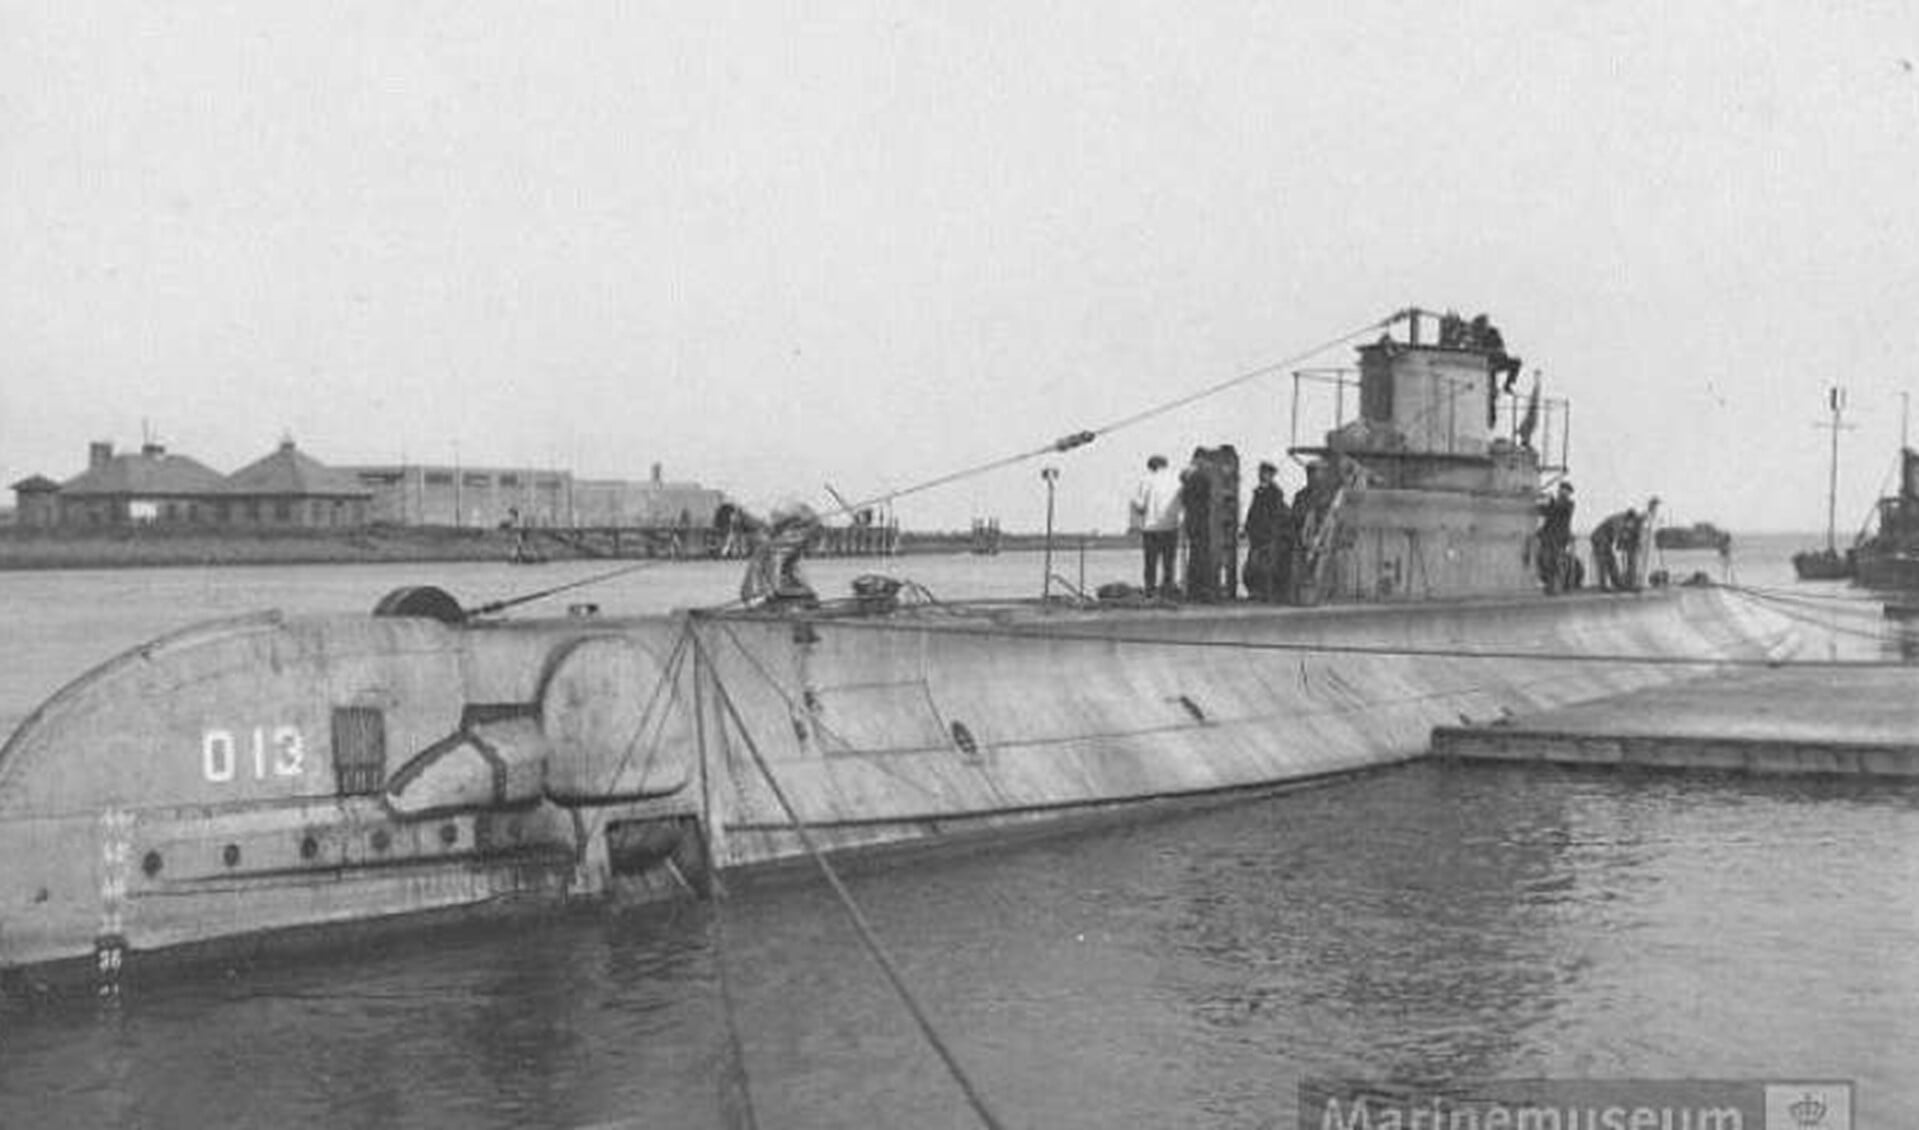 Hr. Ms. O13 is de laatste nog niet teruggevonden Nederlandse onderzeeboot. Sinds juni 1940 ligt het ergens op de bodem van de Noordzee. 